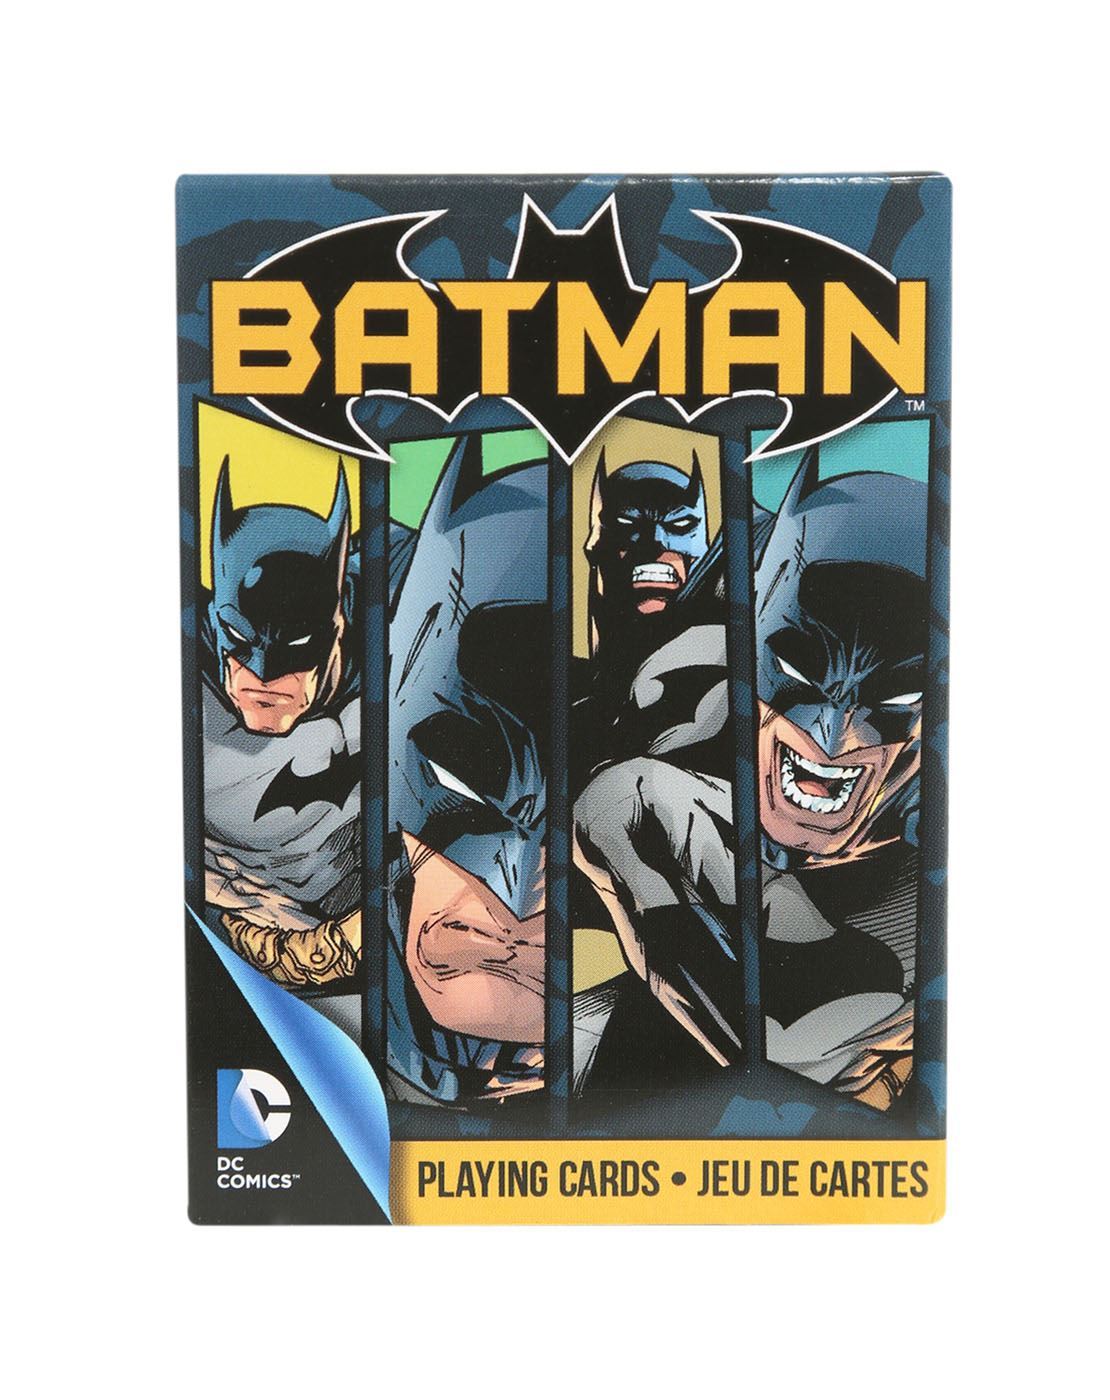 Бэтмен боксы. Игральные карты Бэтмен. Карта Бэтмена. Комикс плей. Play Comics.